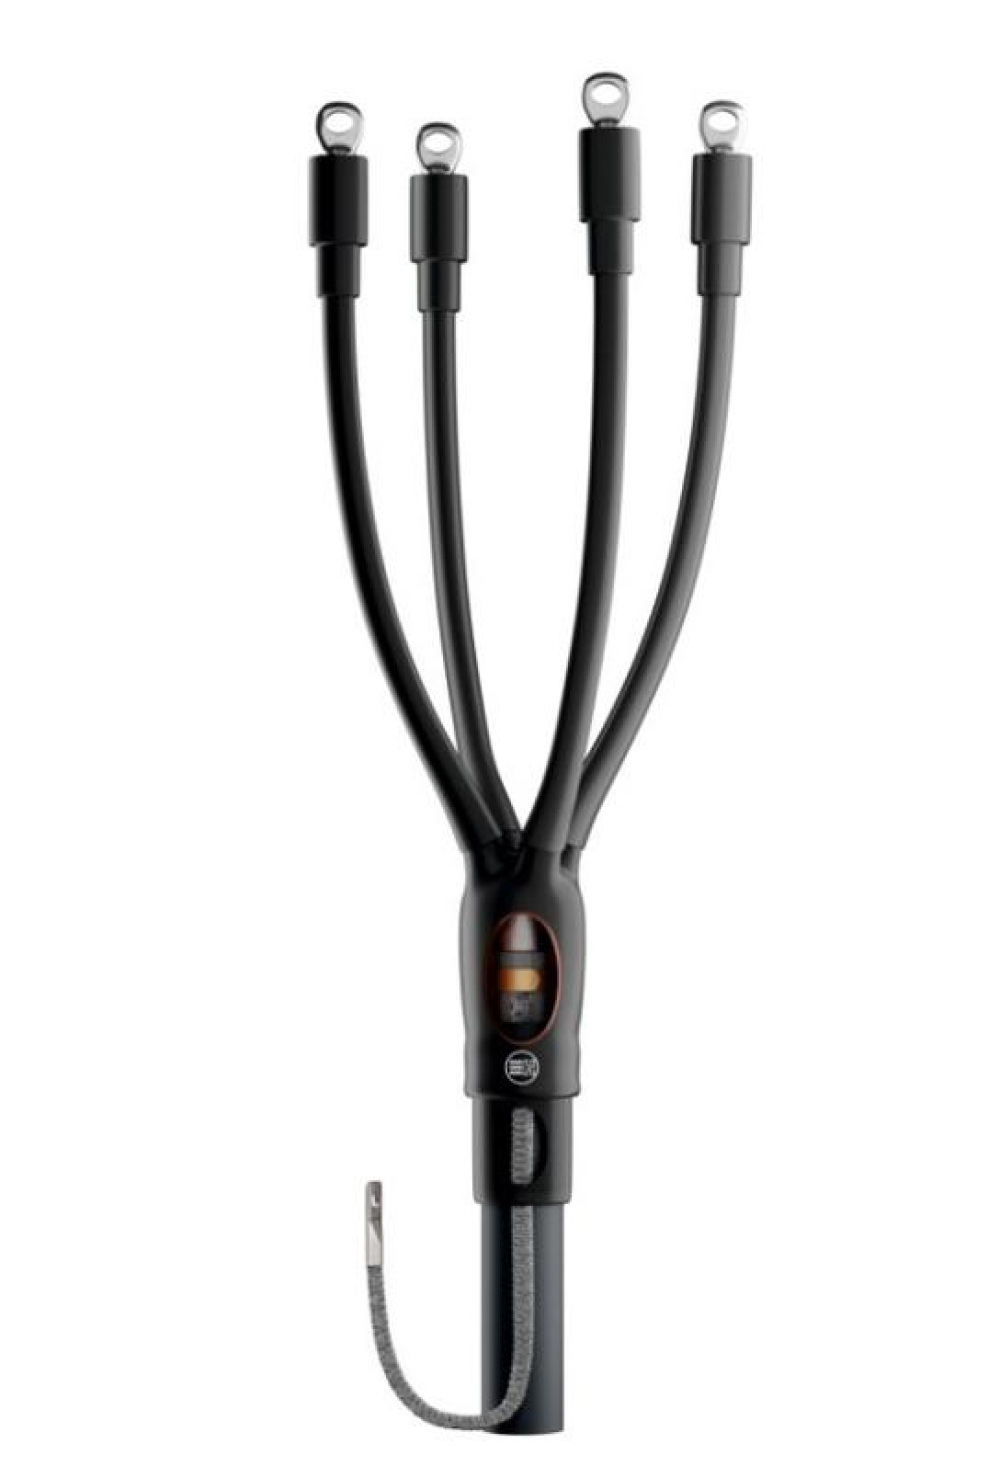 Муфта кабельная НИЛЕД HT2-01 4х70-120 мм2 концевая, количество жил - 4, сечение жил 70-120 мм2, напряжение 1кВ, с болтовыми наконечниками без брони для кабелей с пластмассовой изоляцией